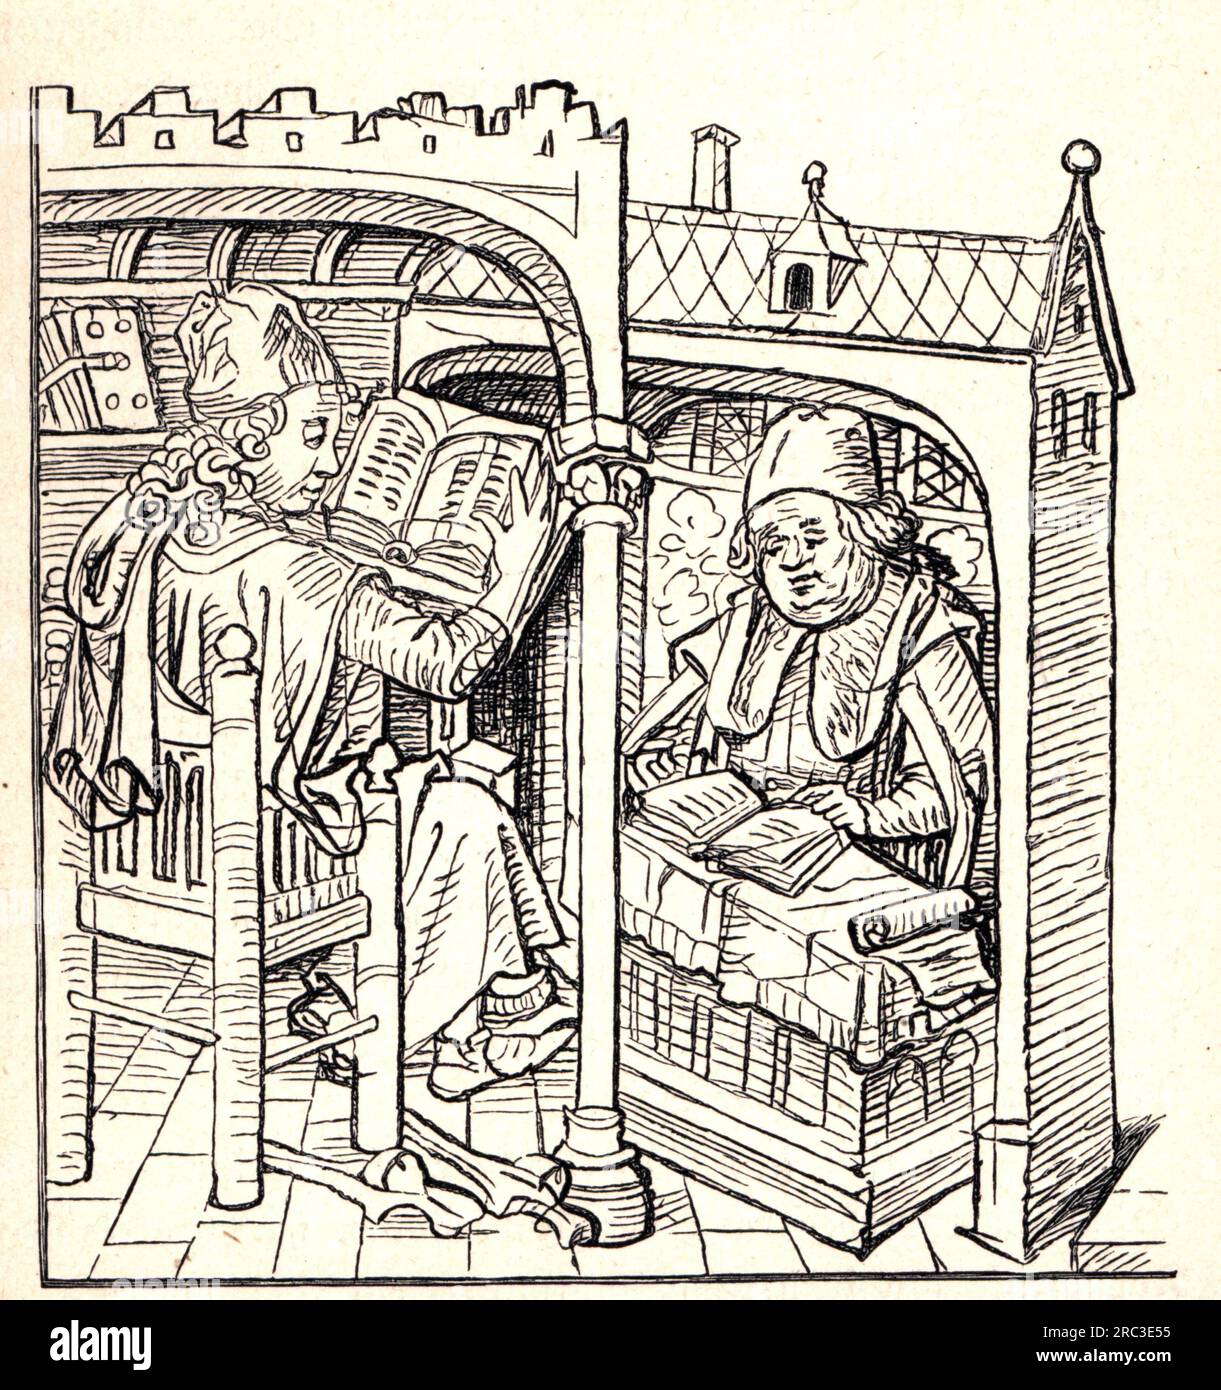 Wissenschaft, Wissenschaftler, Wissenschaftler am Rednerpult, Holzschnitt, 15. Jahrhundert, ZUSÄTZLICHE-RECHTE-FREIGABE-INFO-NICHT-VERFÜGBAR Stockfoto